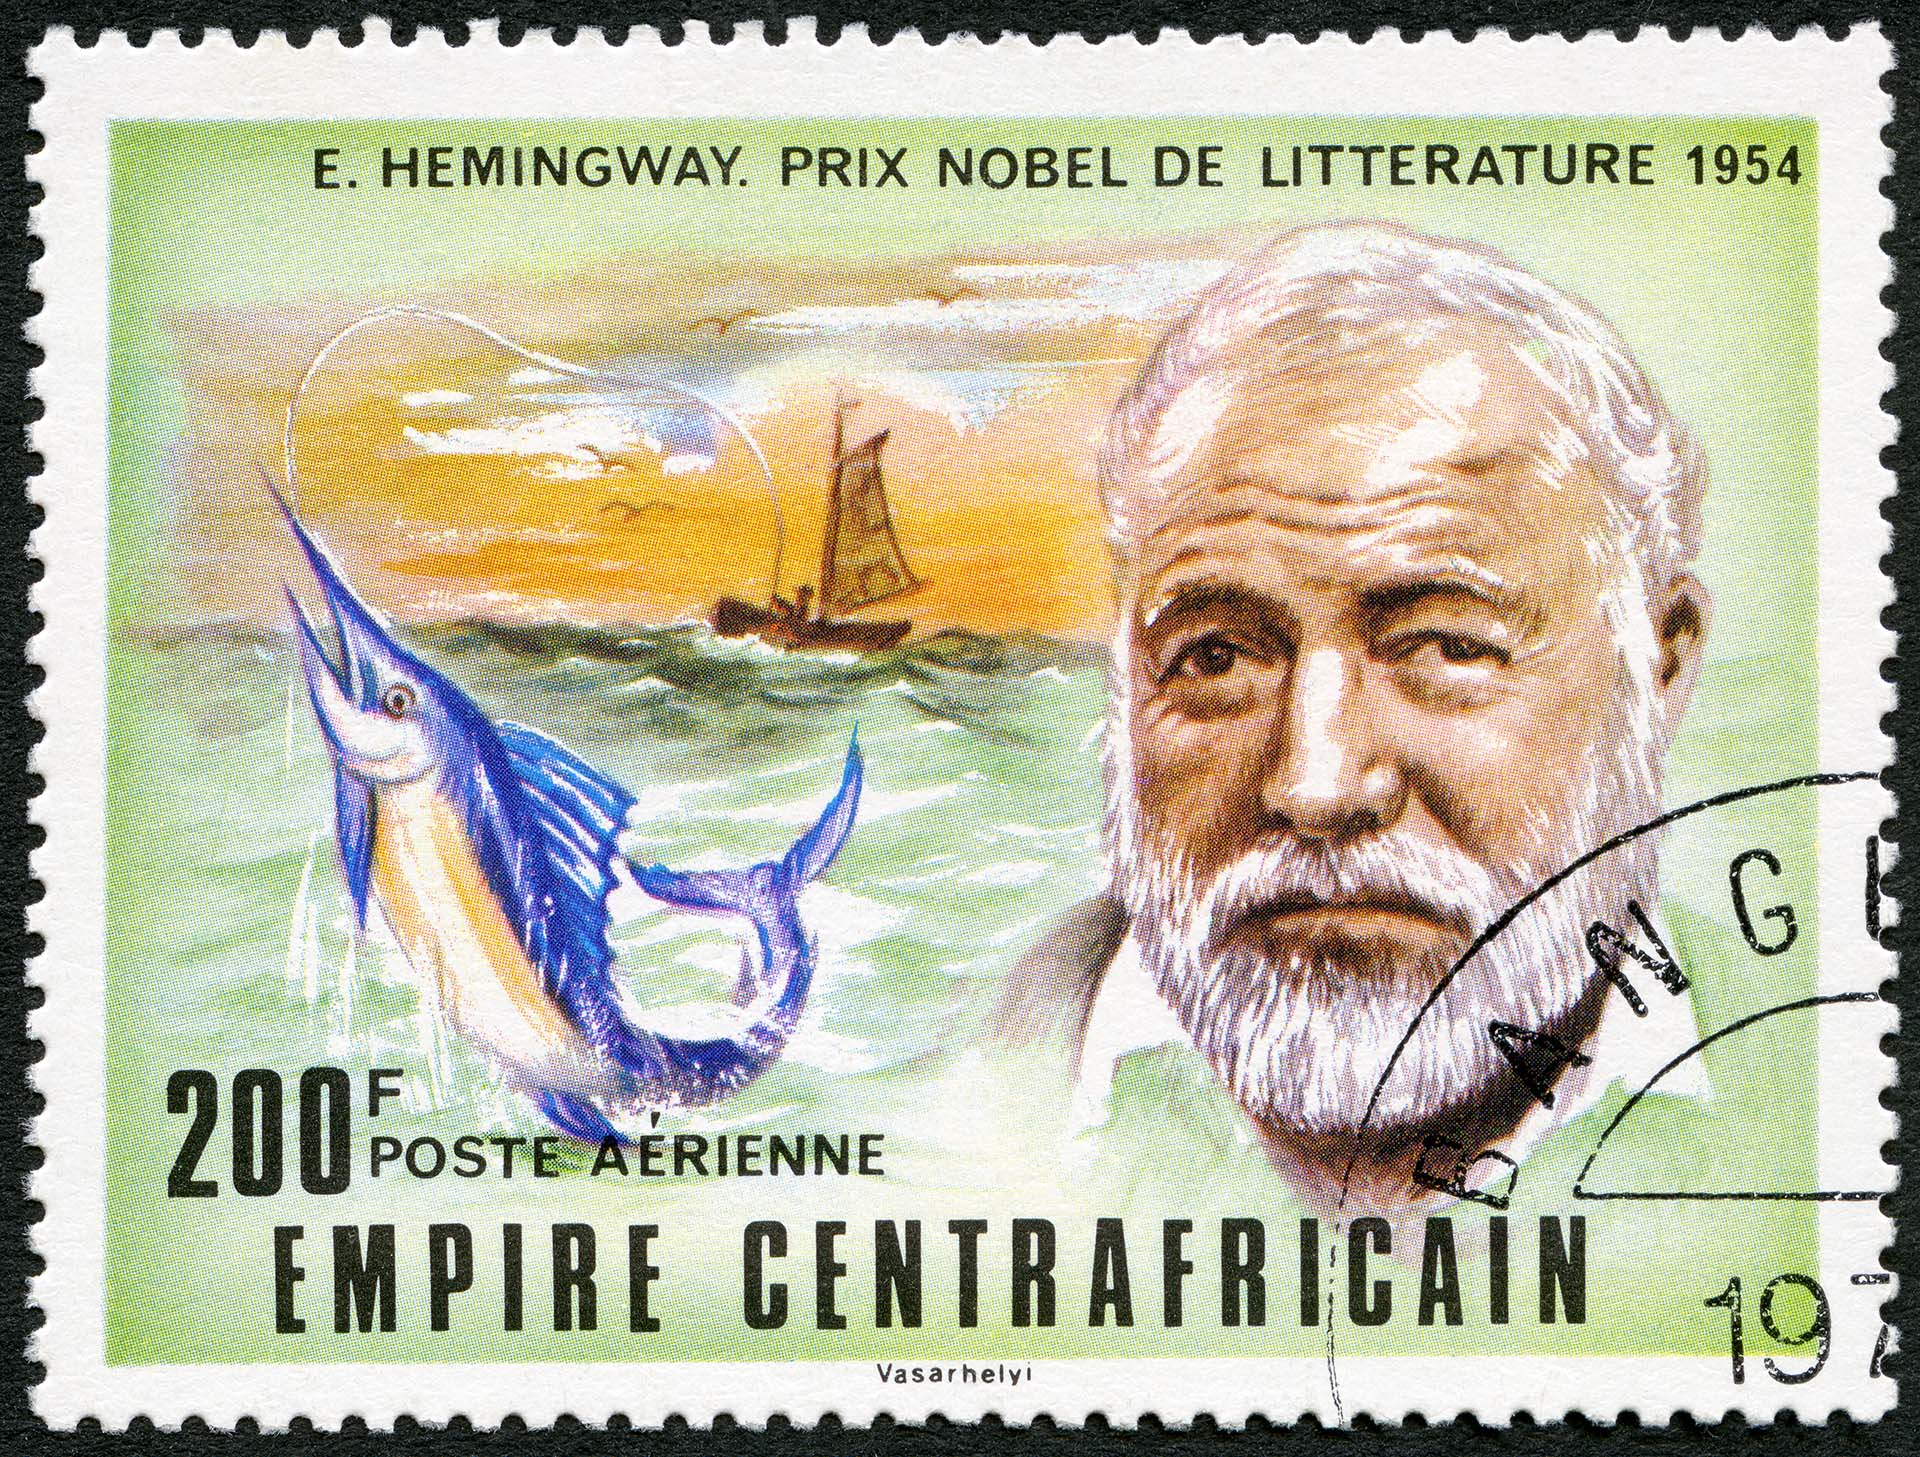 Ernest Hemingway on a postage stamp